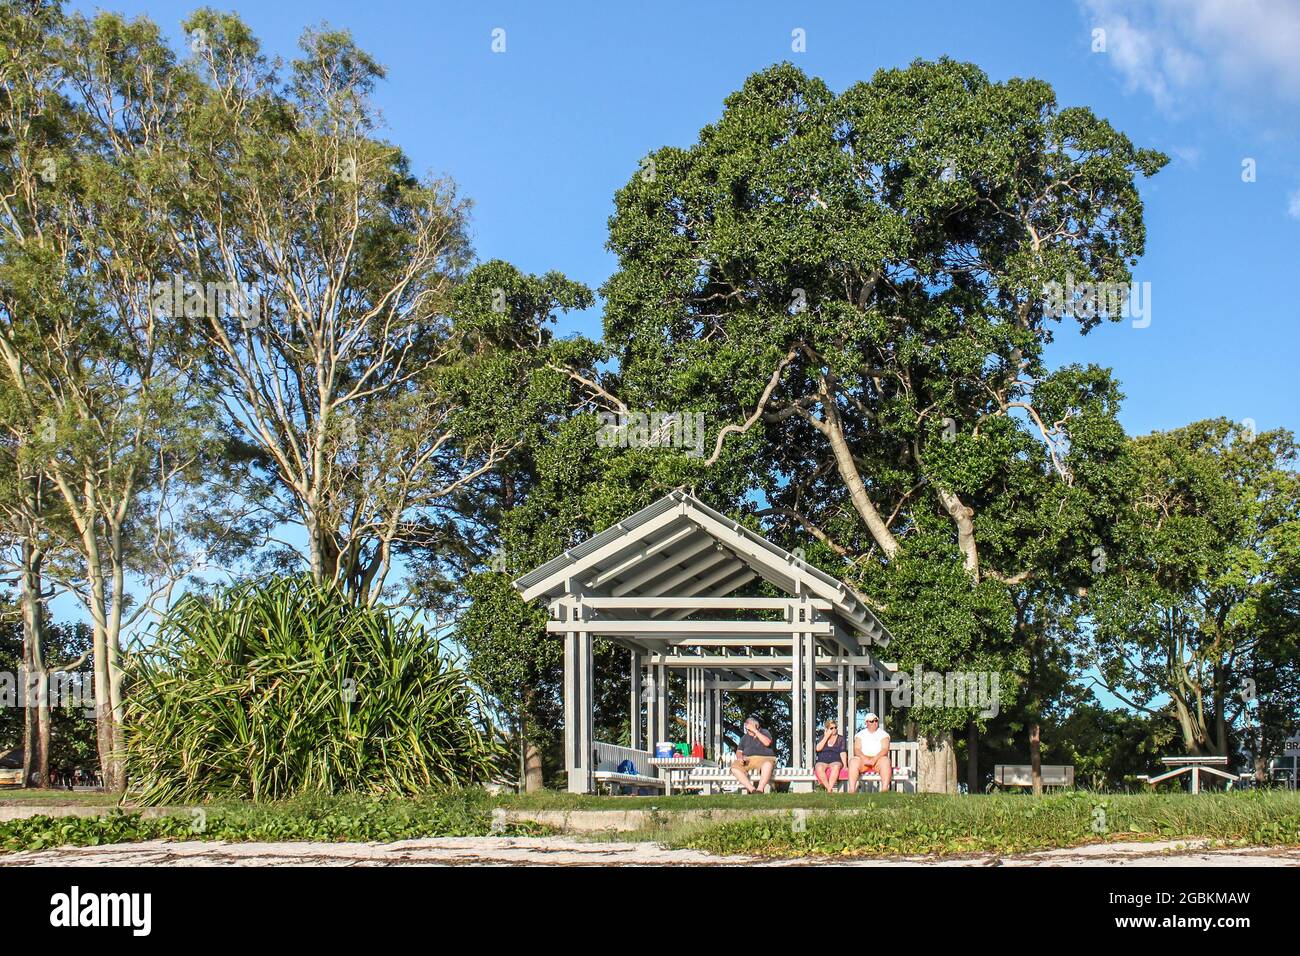 02-242-2015 Bribie Island Queensland Australien - Touristen sitzen im Park Schutz unter riesigen Bäumen genießen den Tag an der Sunset Coast an sonnigen Tag mit b Stockfoto